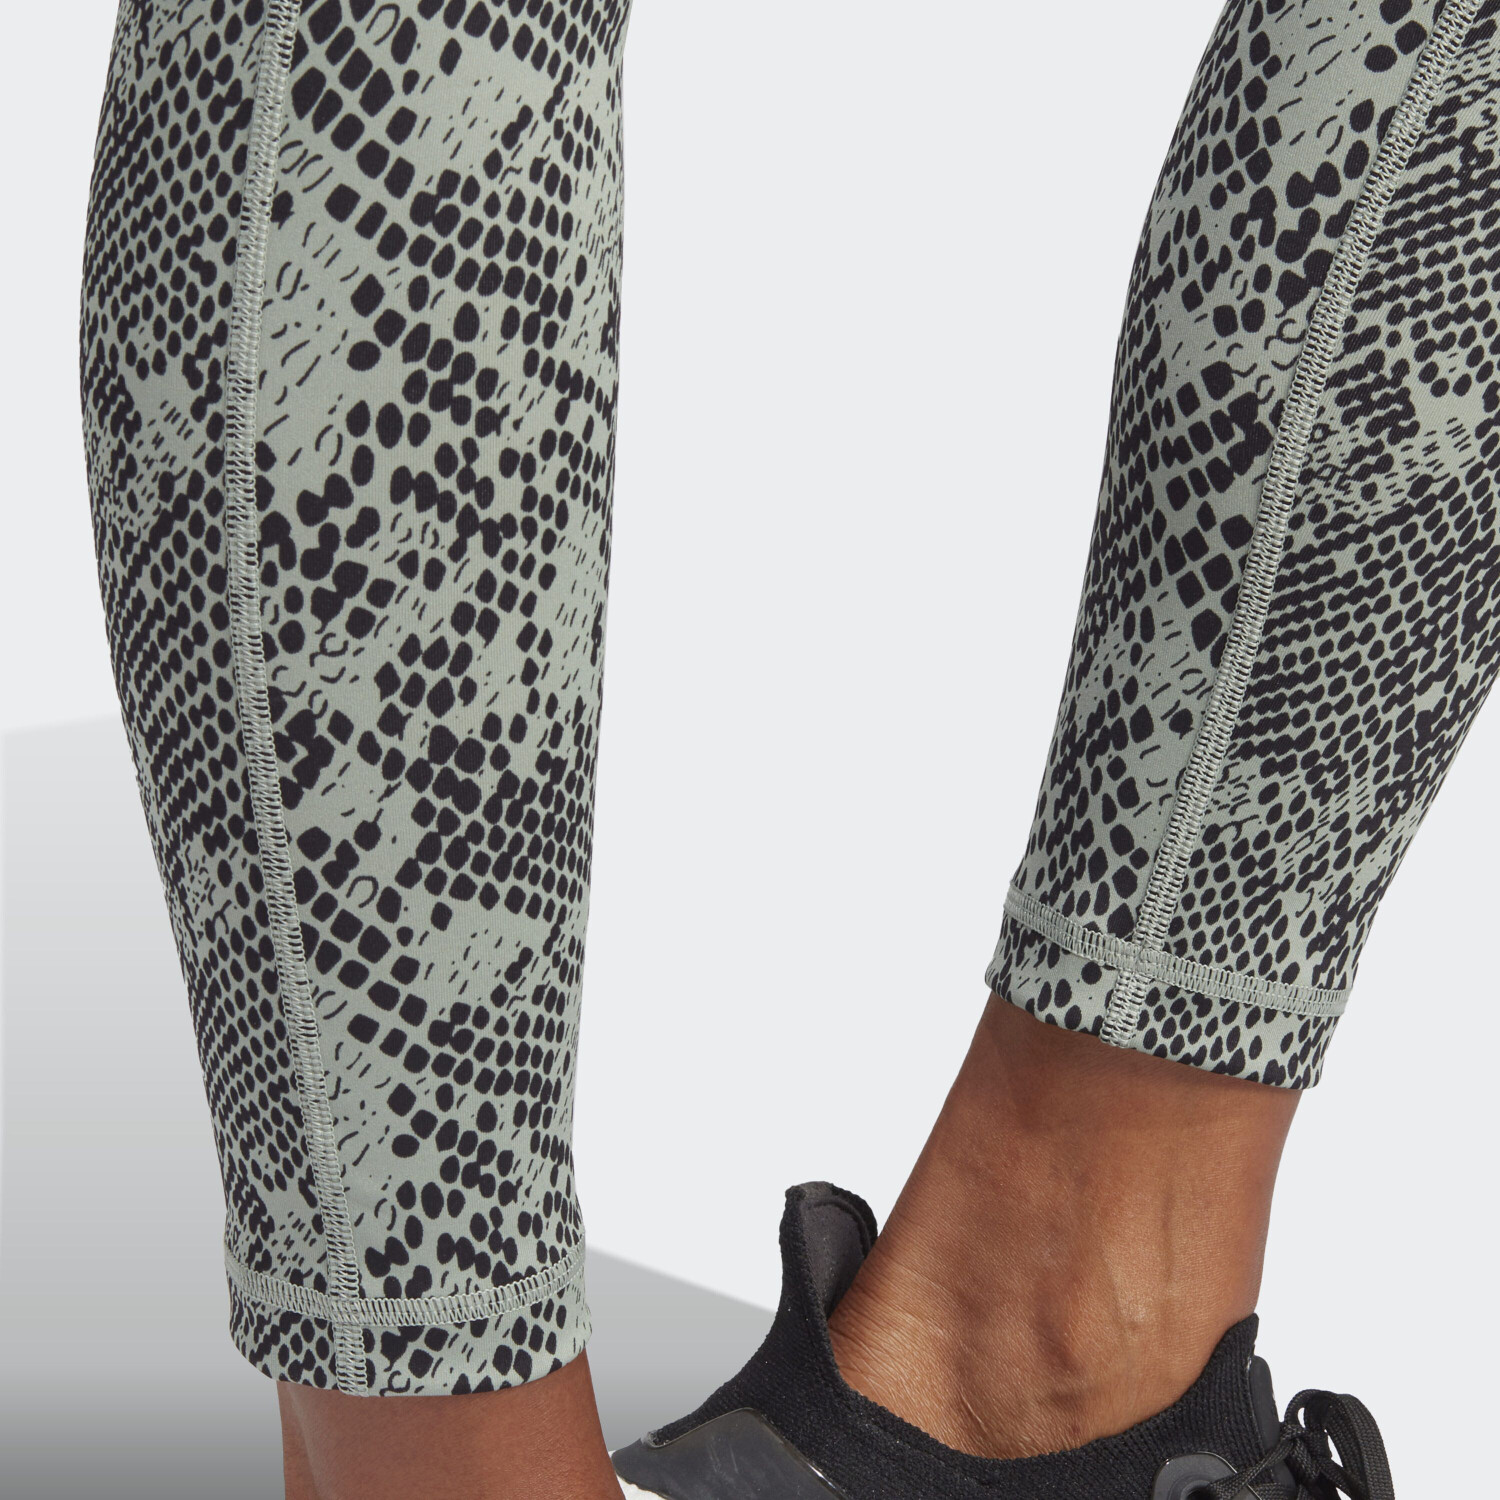 Buy Adidas Leopard Printed 7/8 Leggings In Multiple Colors